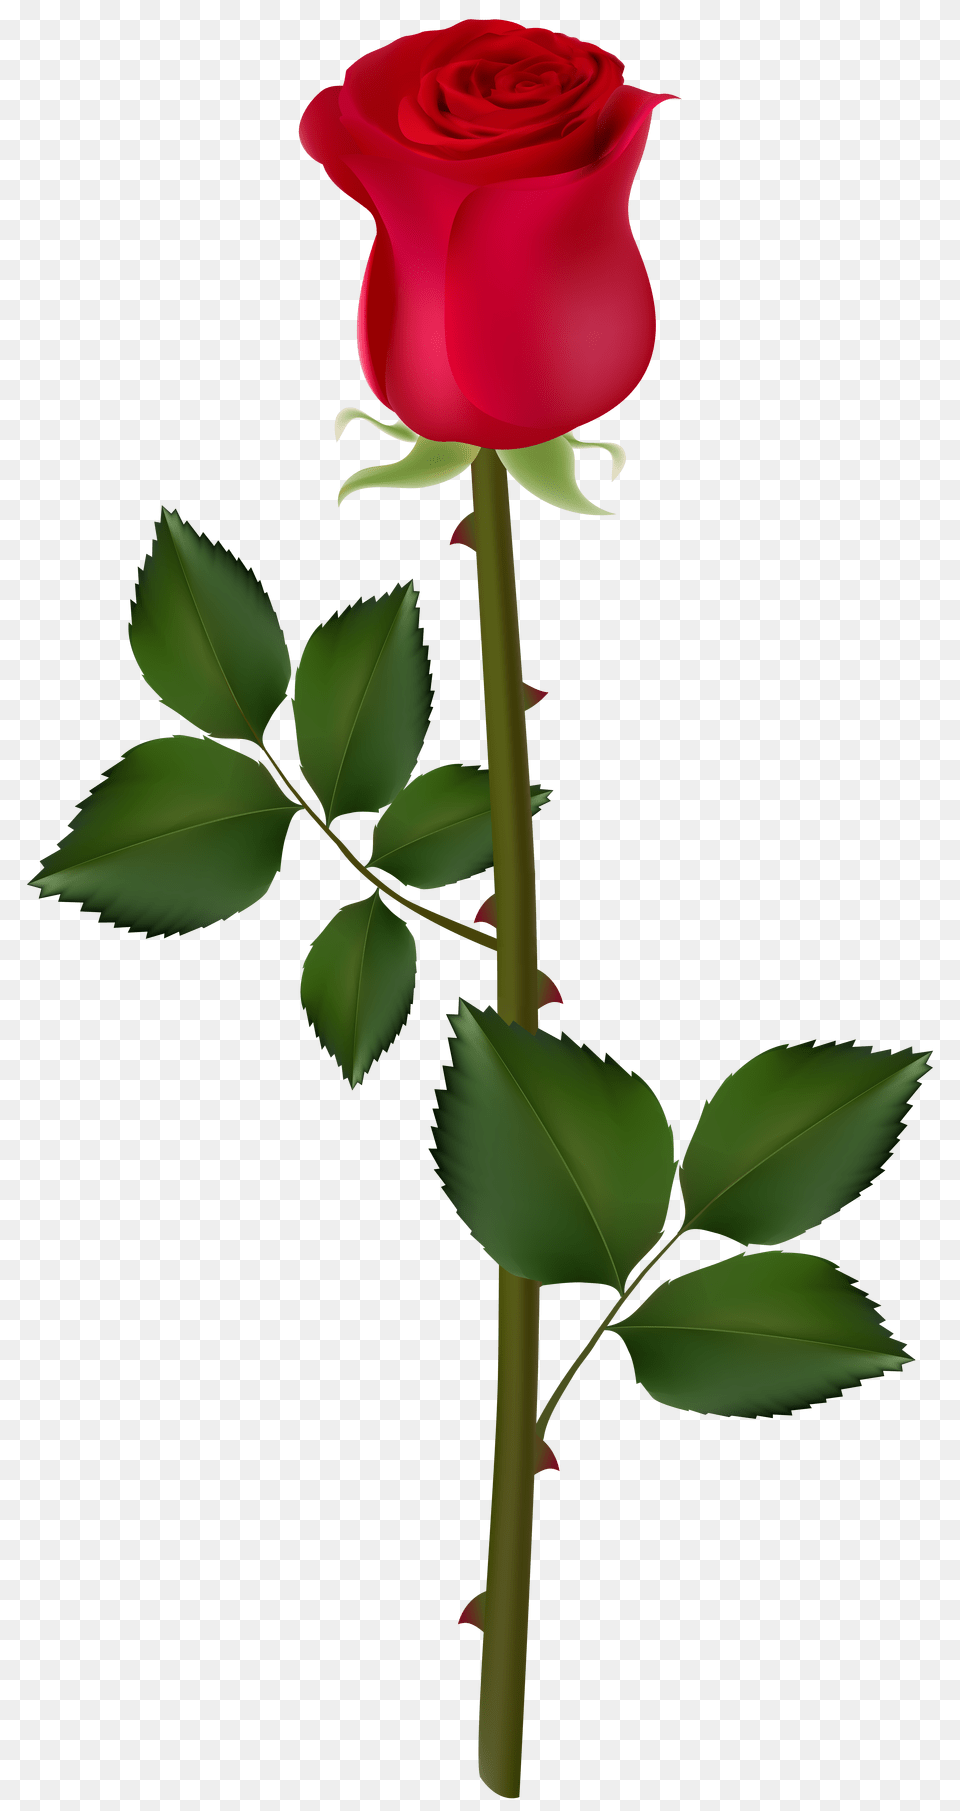 Rose Flower Transparent Clipart Rose Big Good Mornings, Plant Png Image